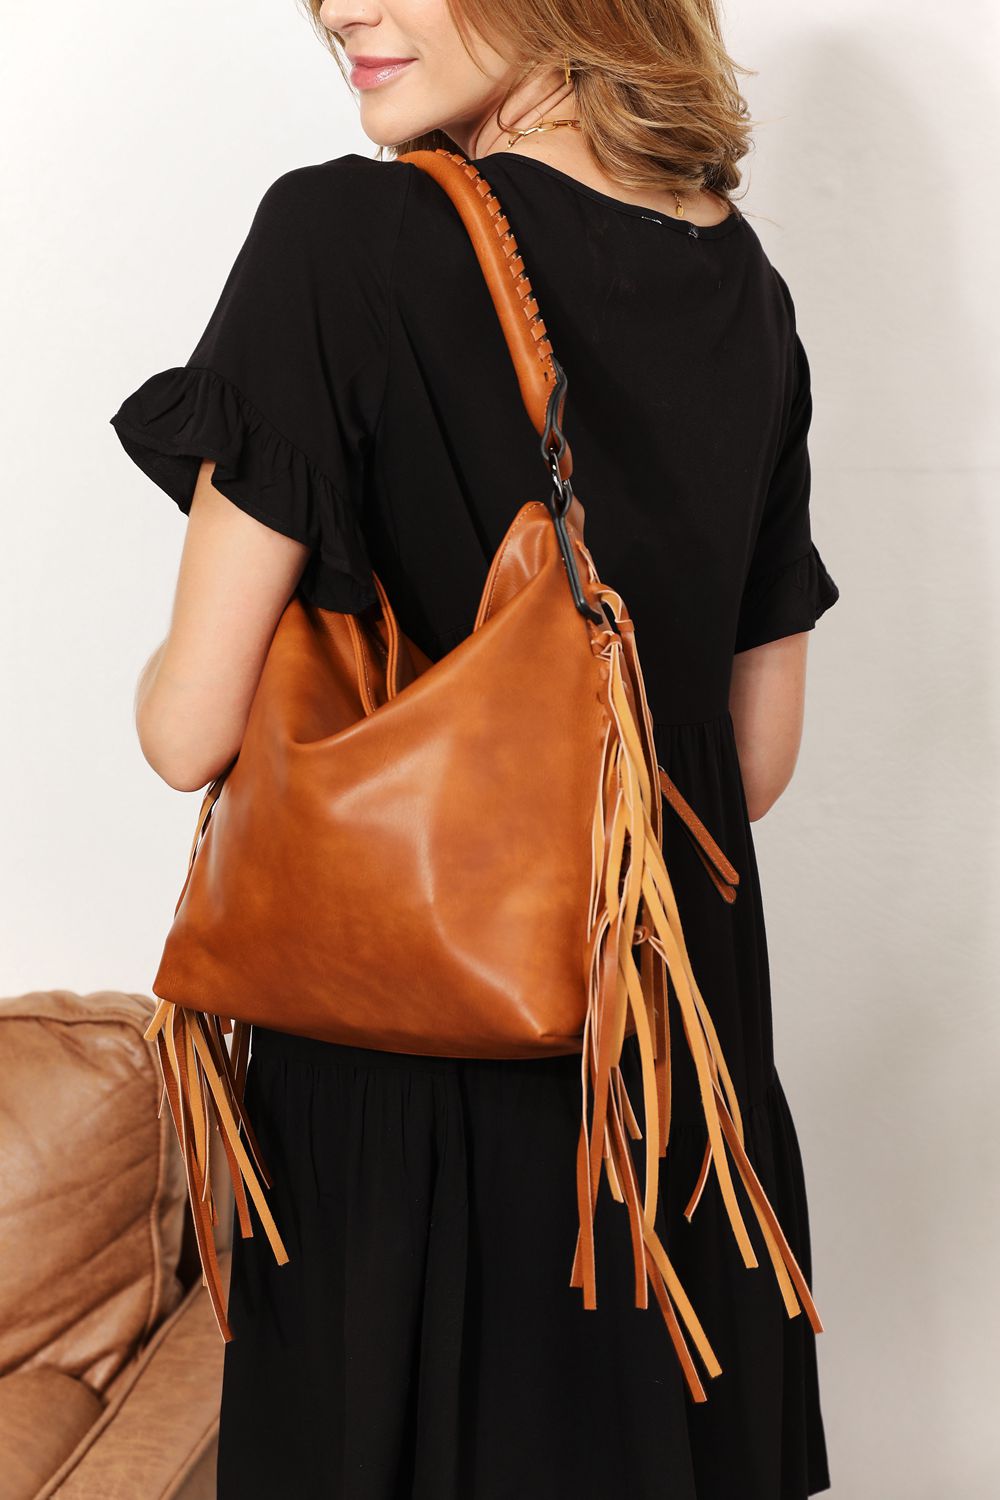 SHOMICO PU Leather Fringe Detail Shoulder Bag apparel & accessories